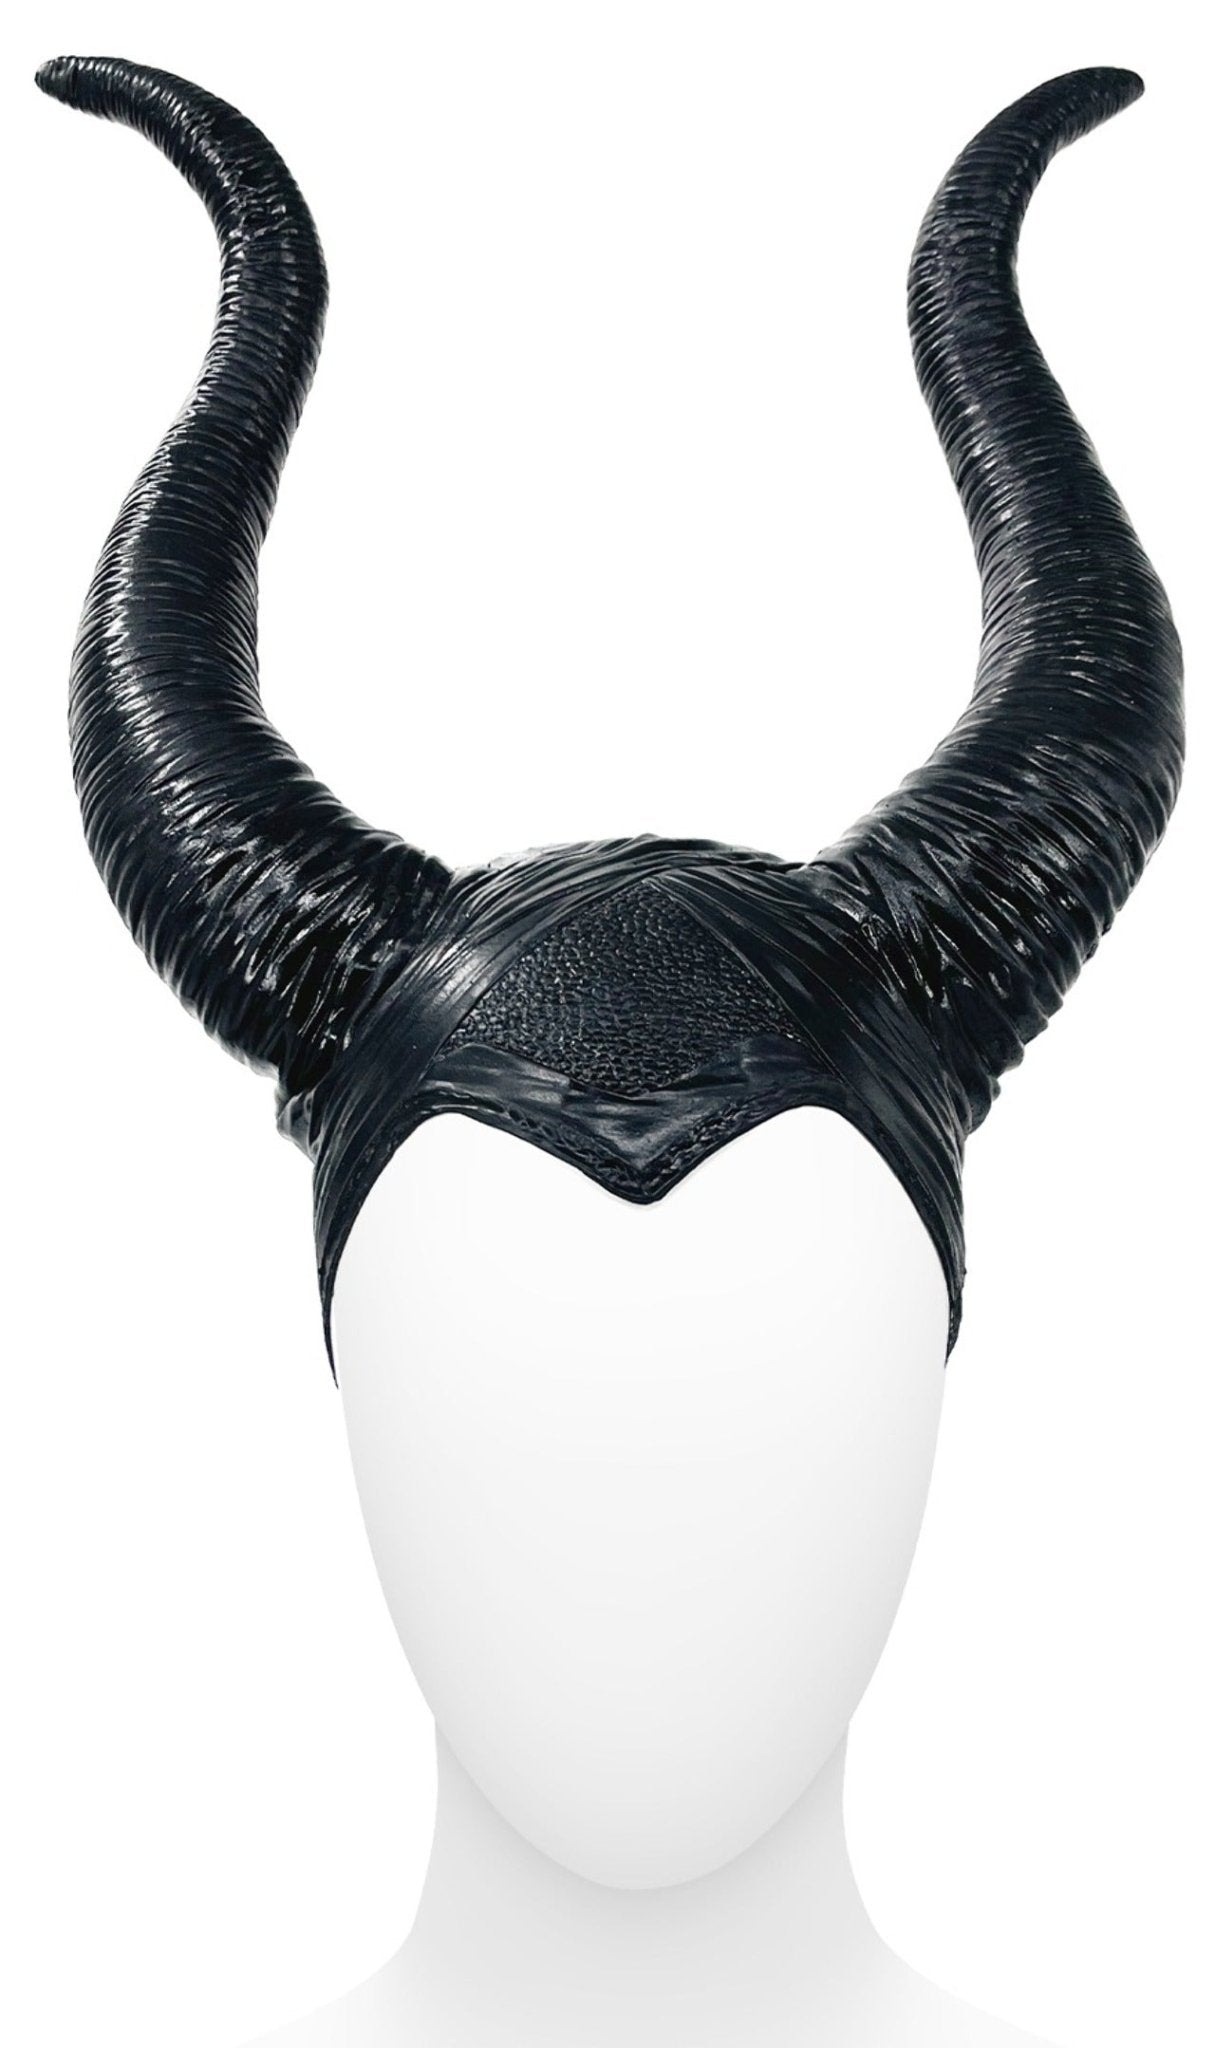 Maleficent Schwarzer Hut